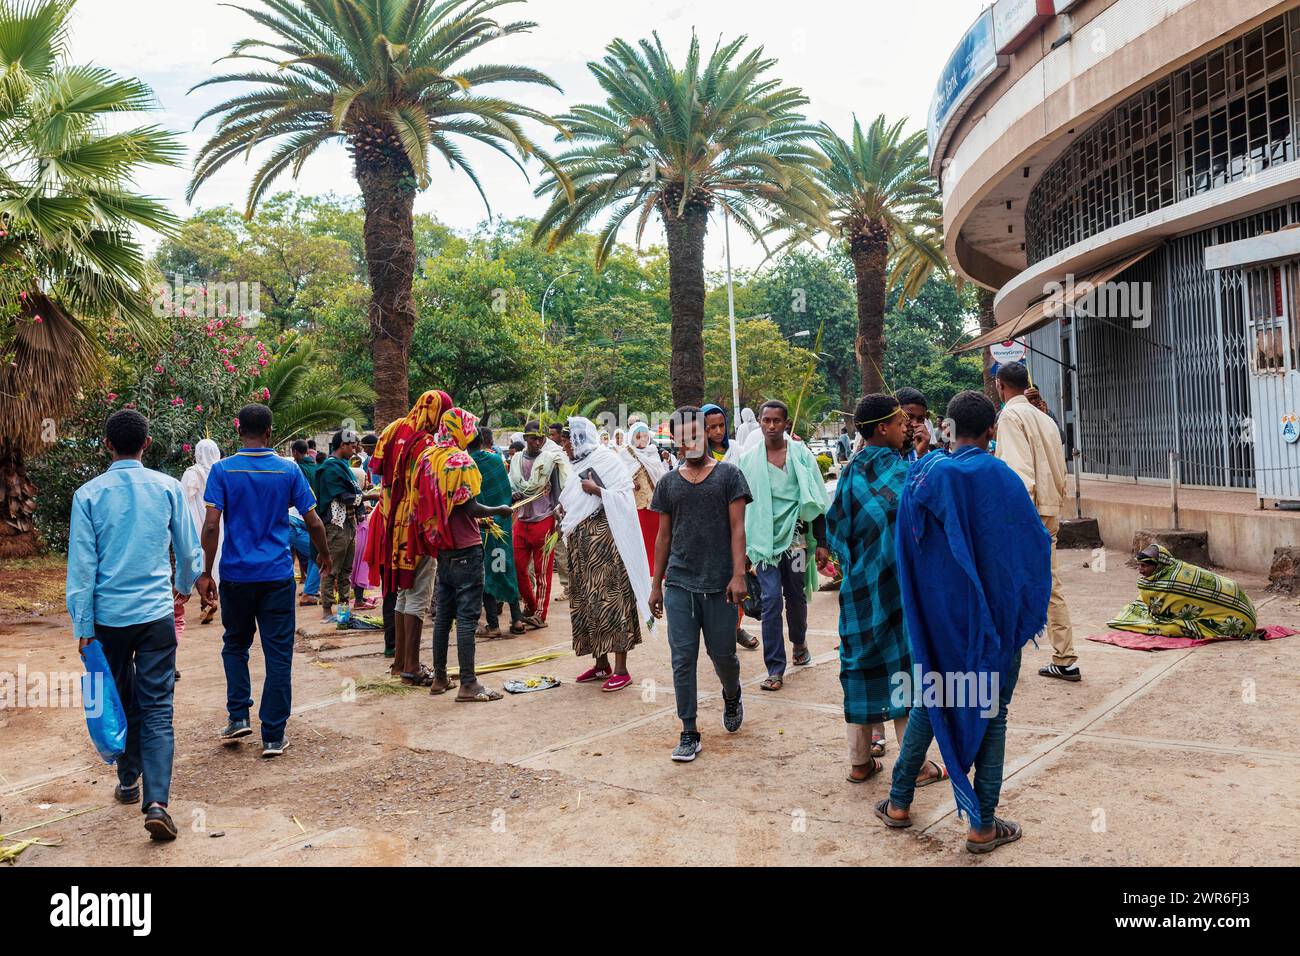 Bahir dar, Äthiopien - 21. April 2019: In Bahir dar feiern die Völker die Straßen, Frauen in weißen Tüchern, die den Trad widerspiegeln Stockfoto